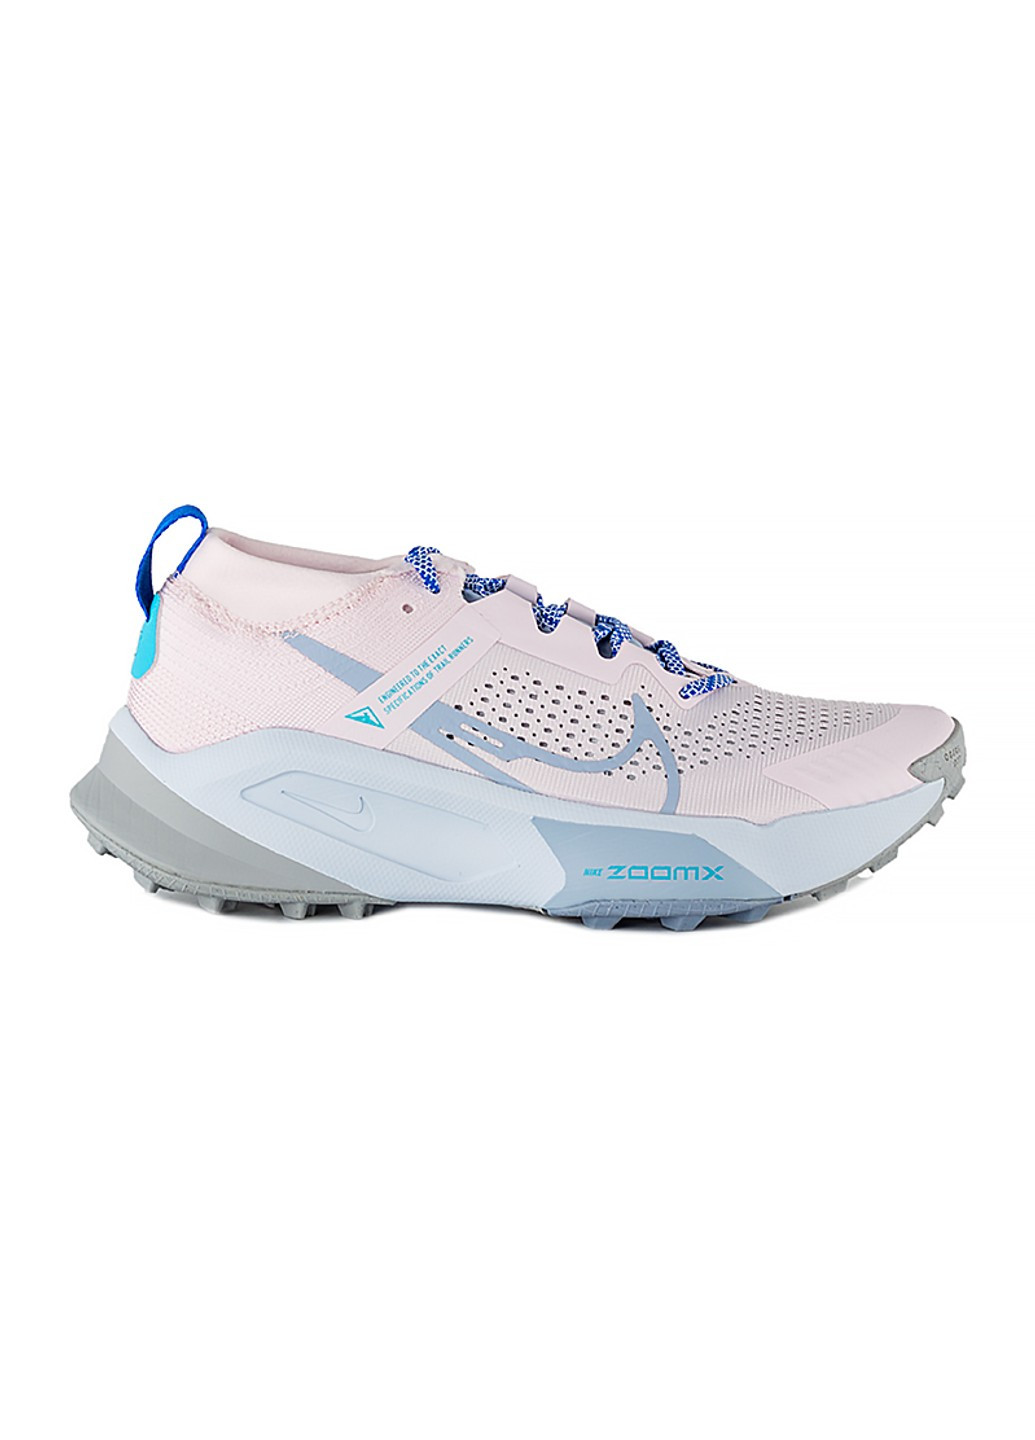 Цветные демисезонные кроссовки w zoomx zegama trail Nike